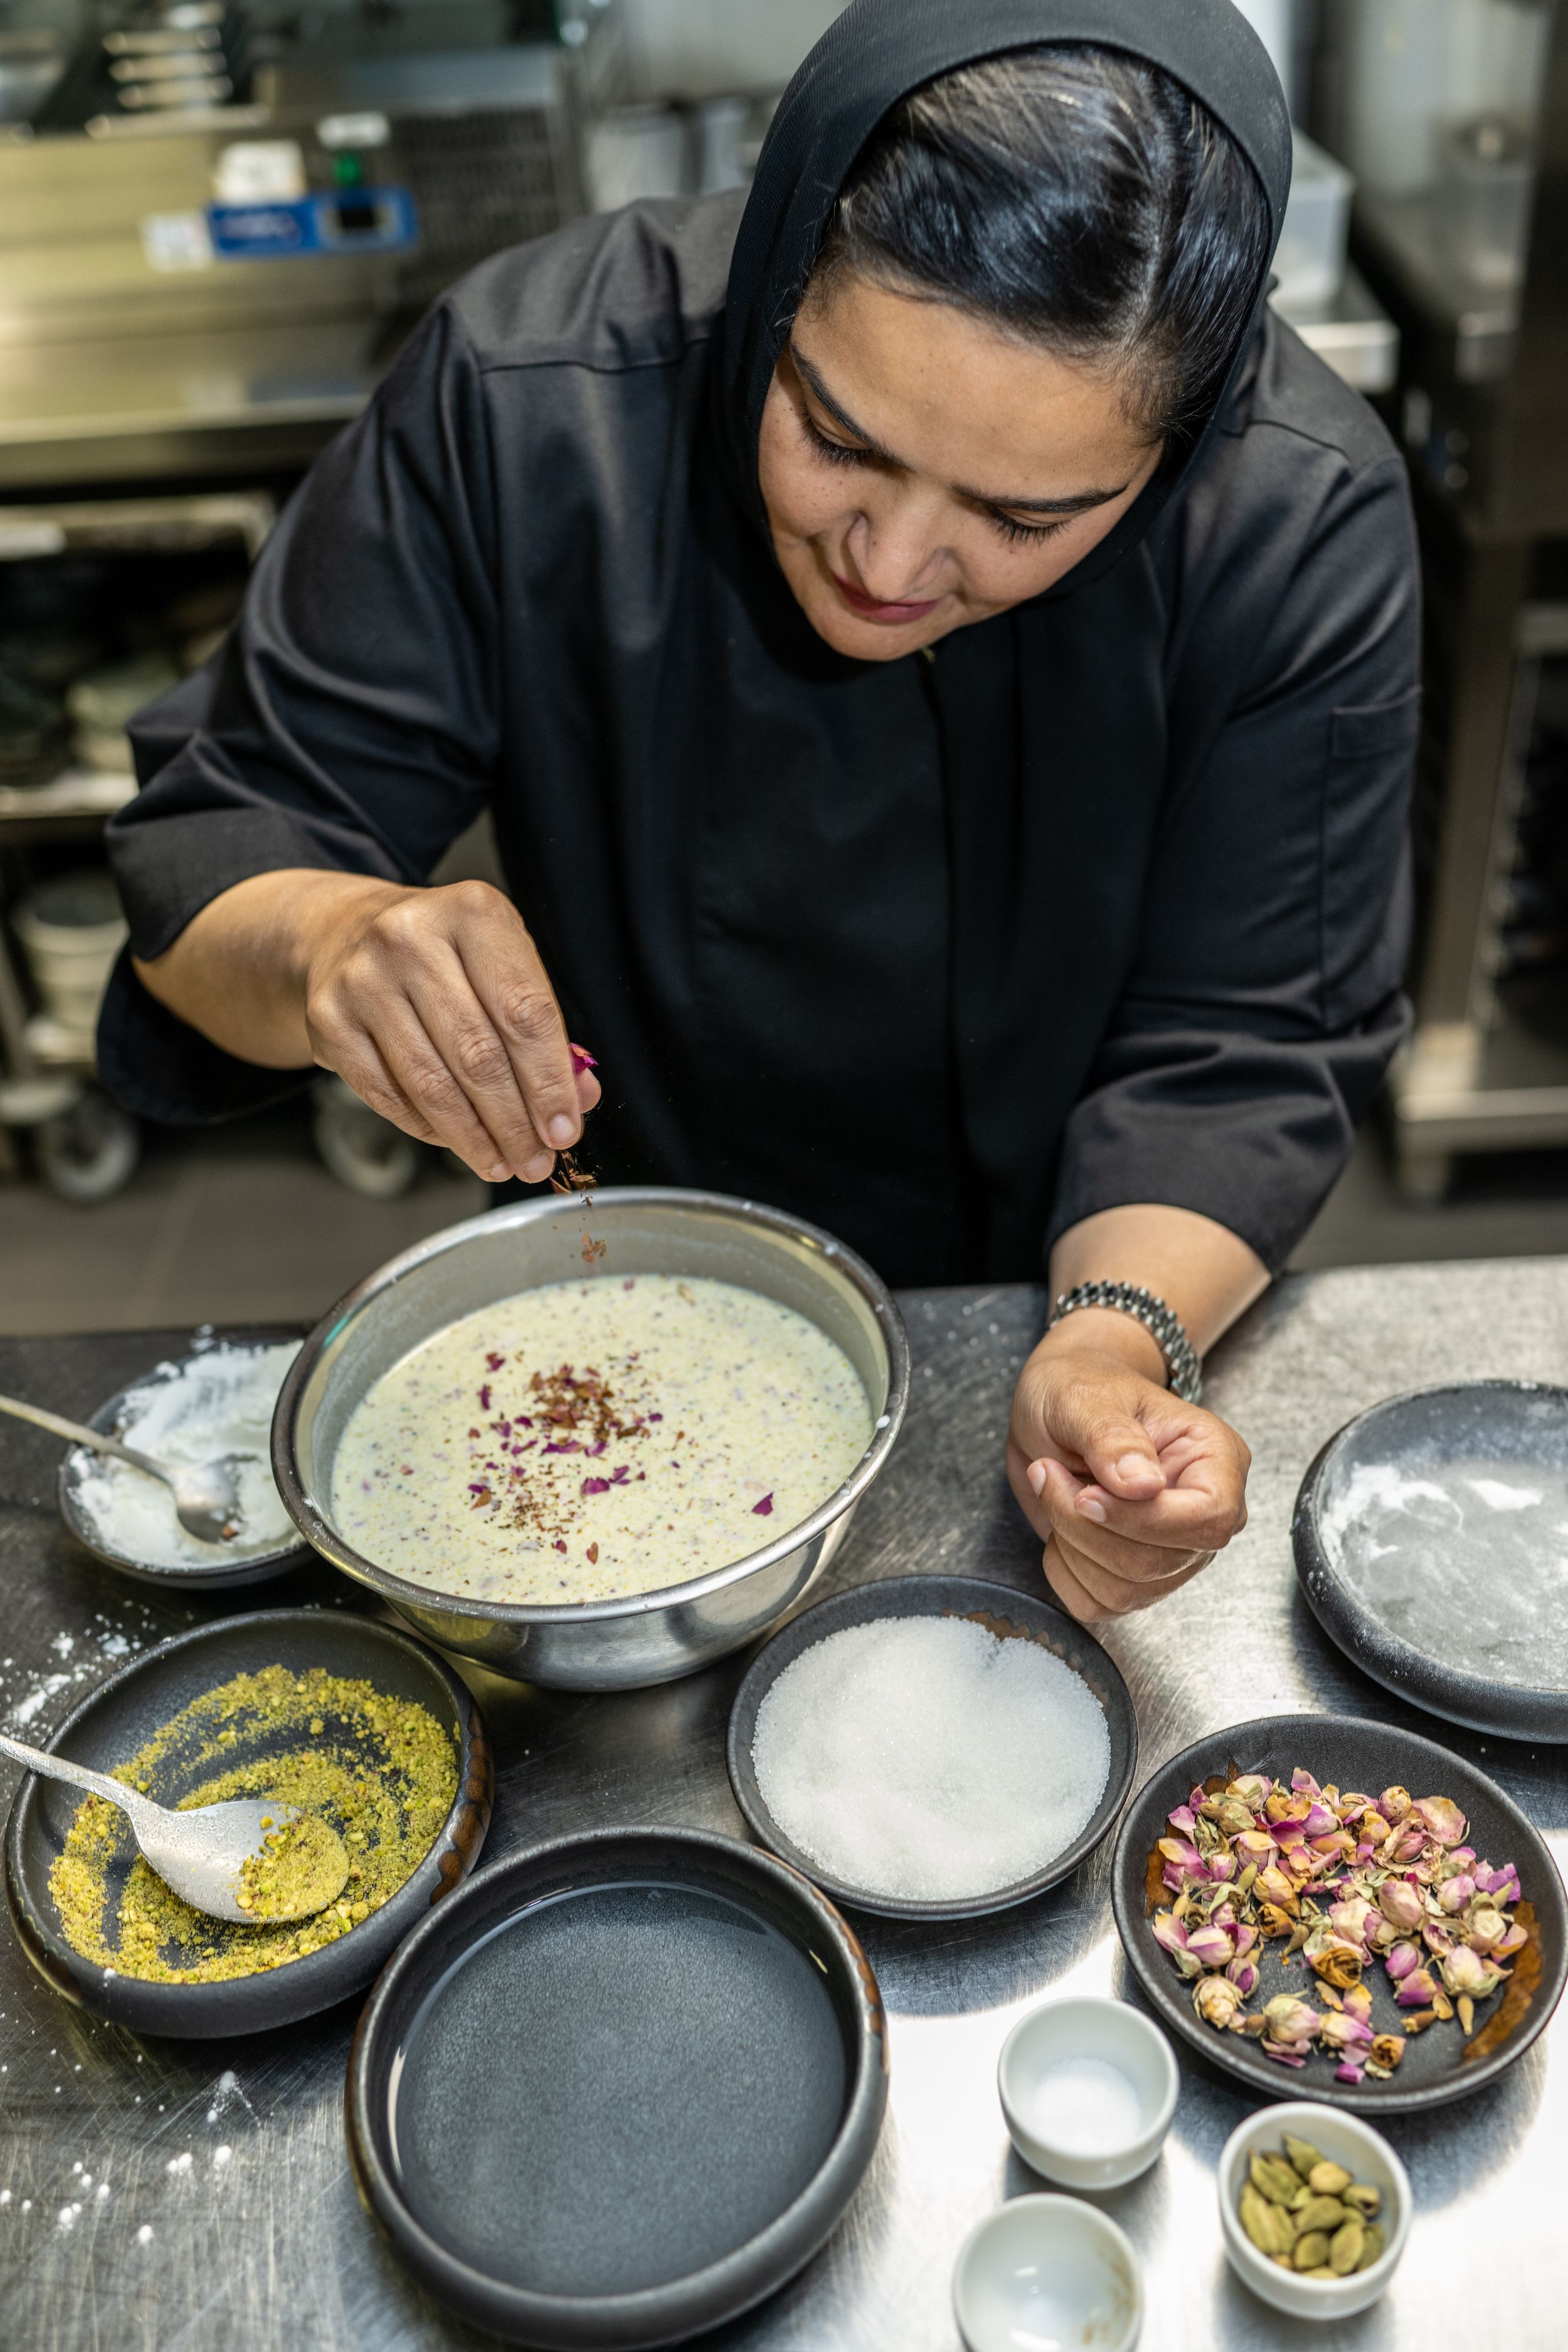 الشيف القطرية الشهيرة نوف تضيف التوابل إلى وعاء، محاط بمكونات الطهي في مطبخها الاحترافي. 